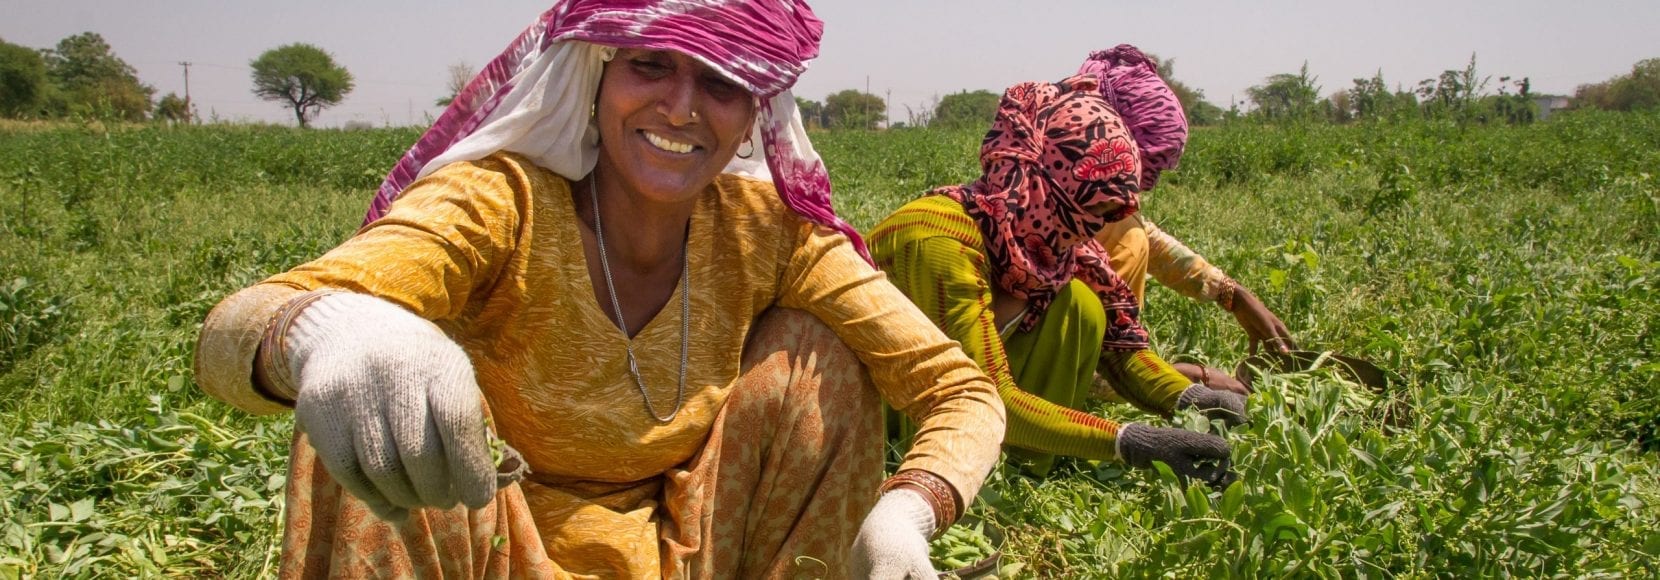 Women harvest peas in India